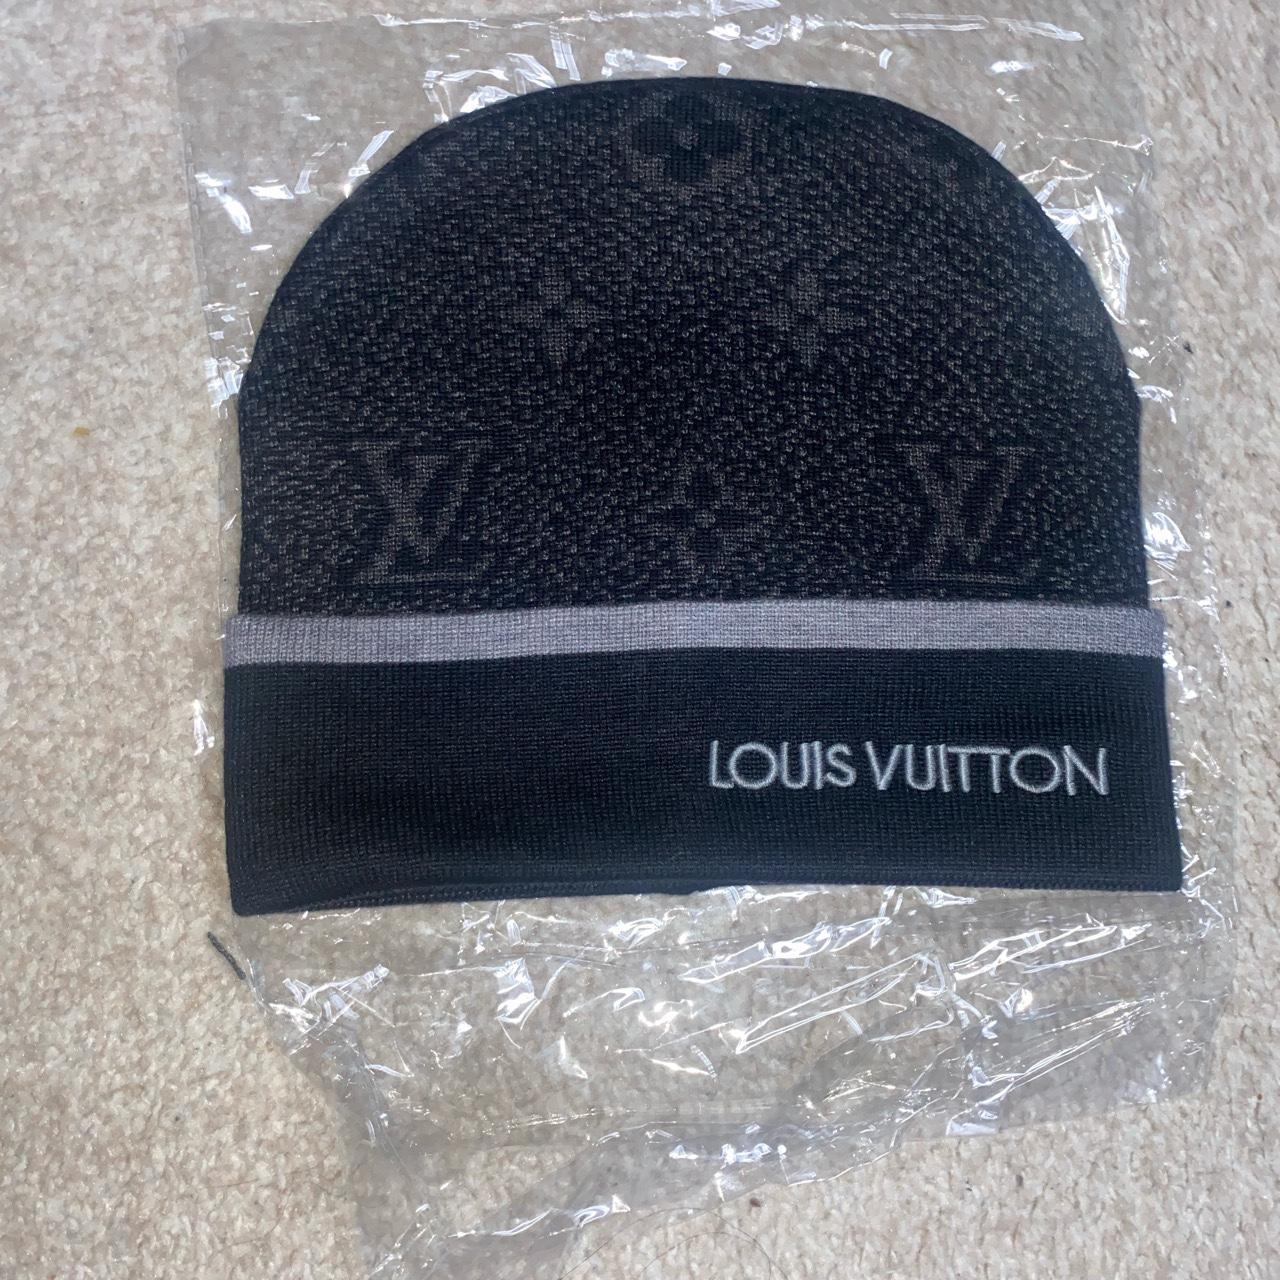 Black Louis Vuitton beanie FREE SHIPPING FAST - Depop